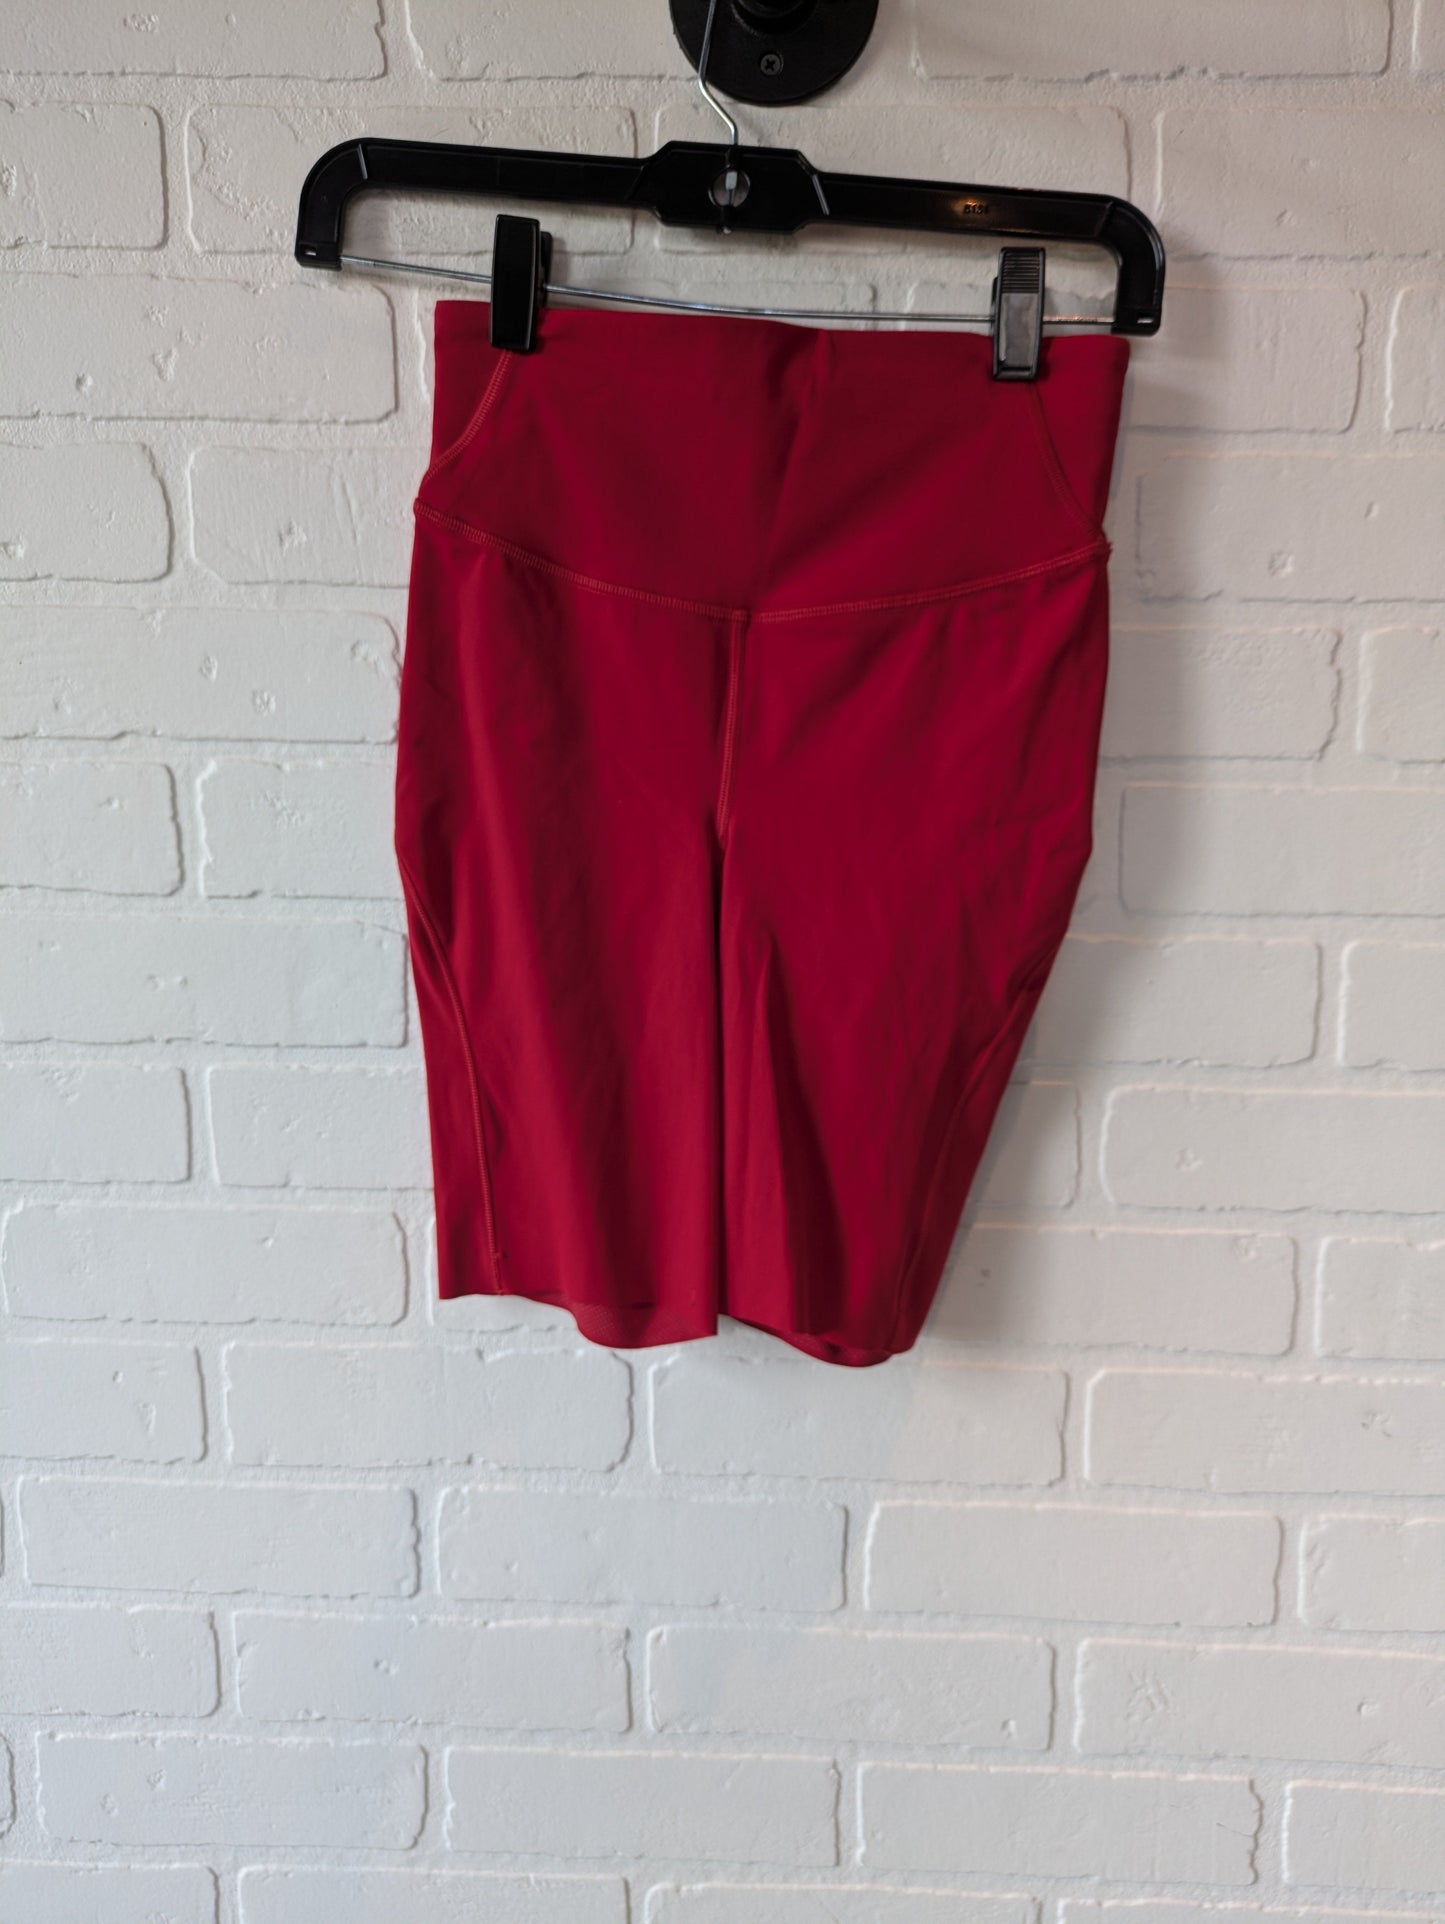 Red Athletic Shorts Lululemon, Size 4